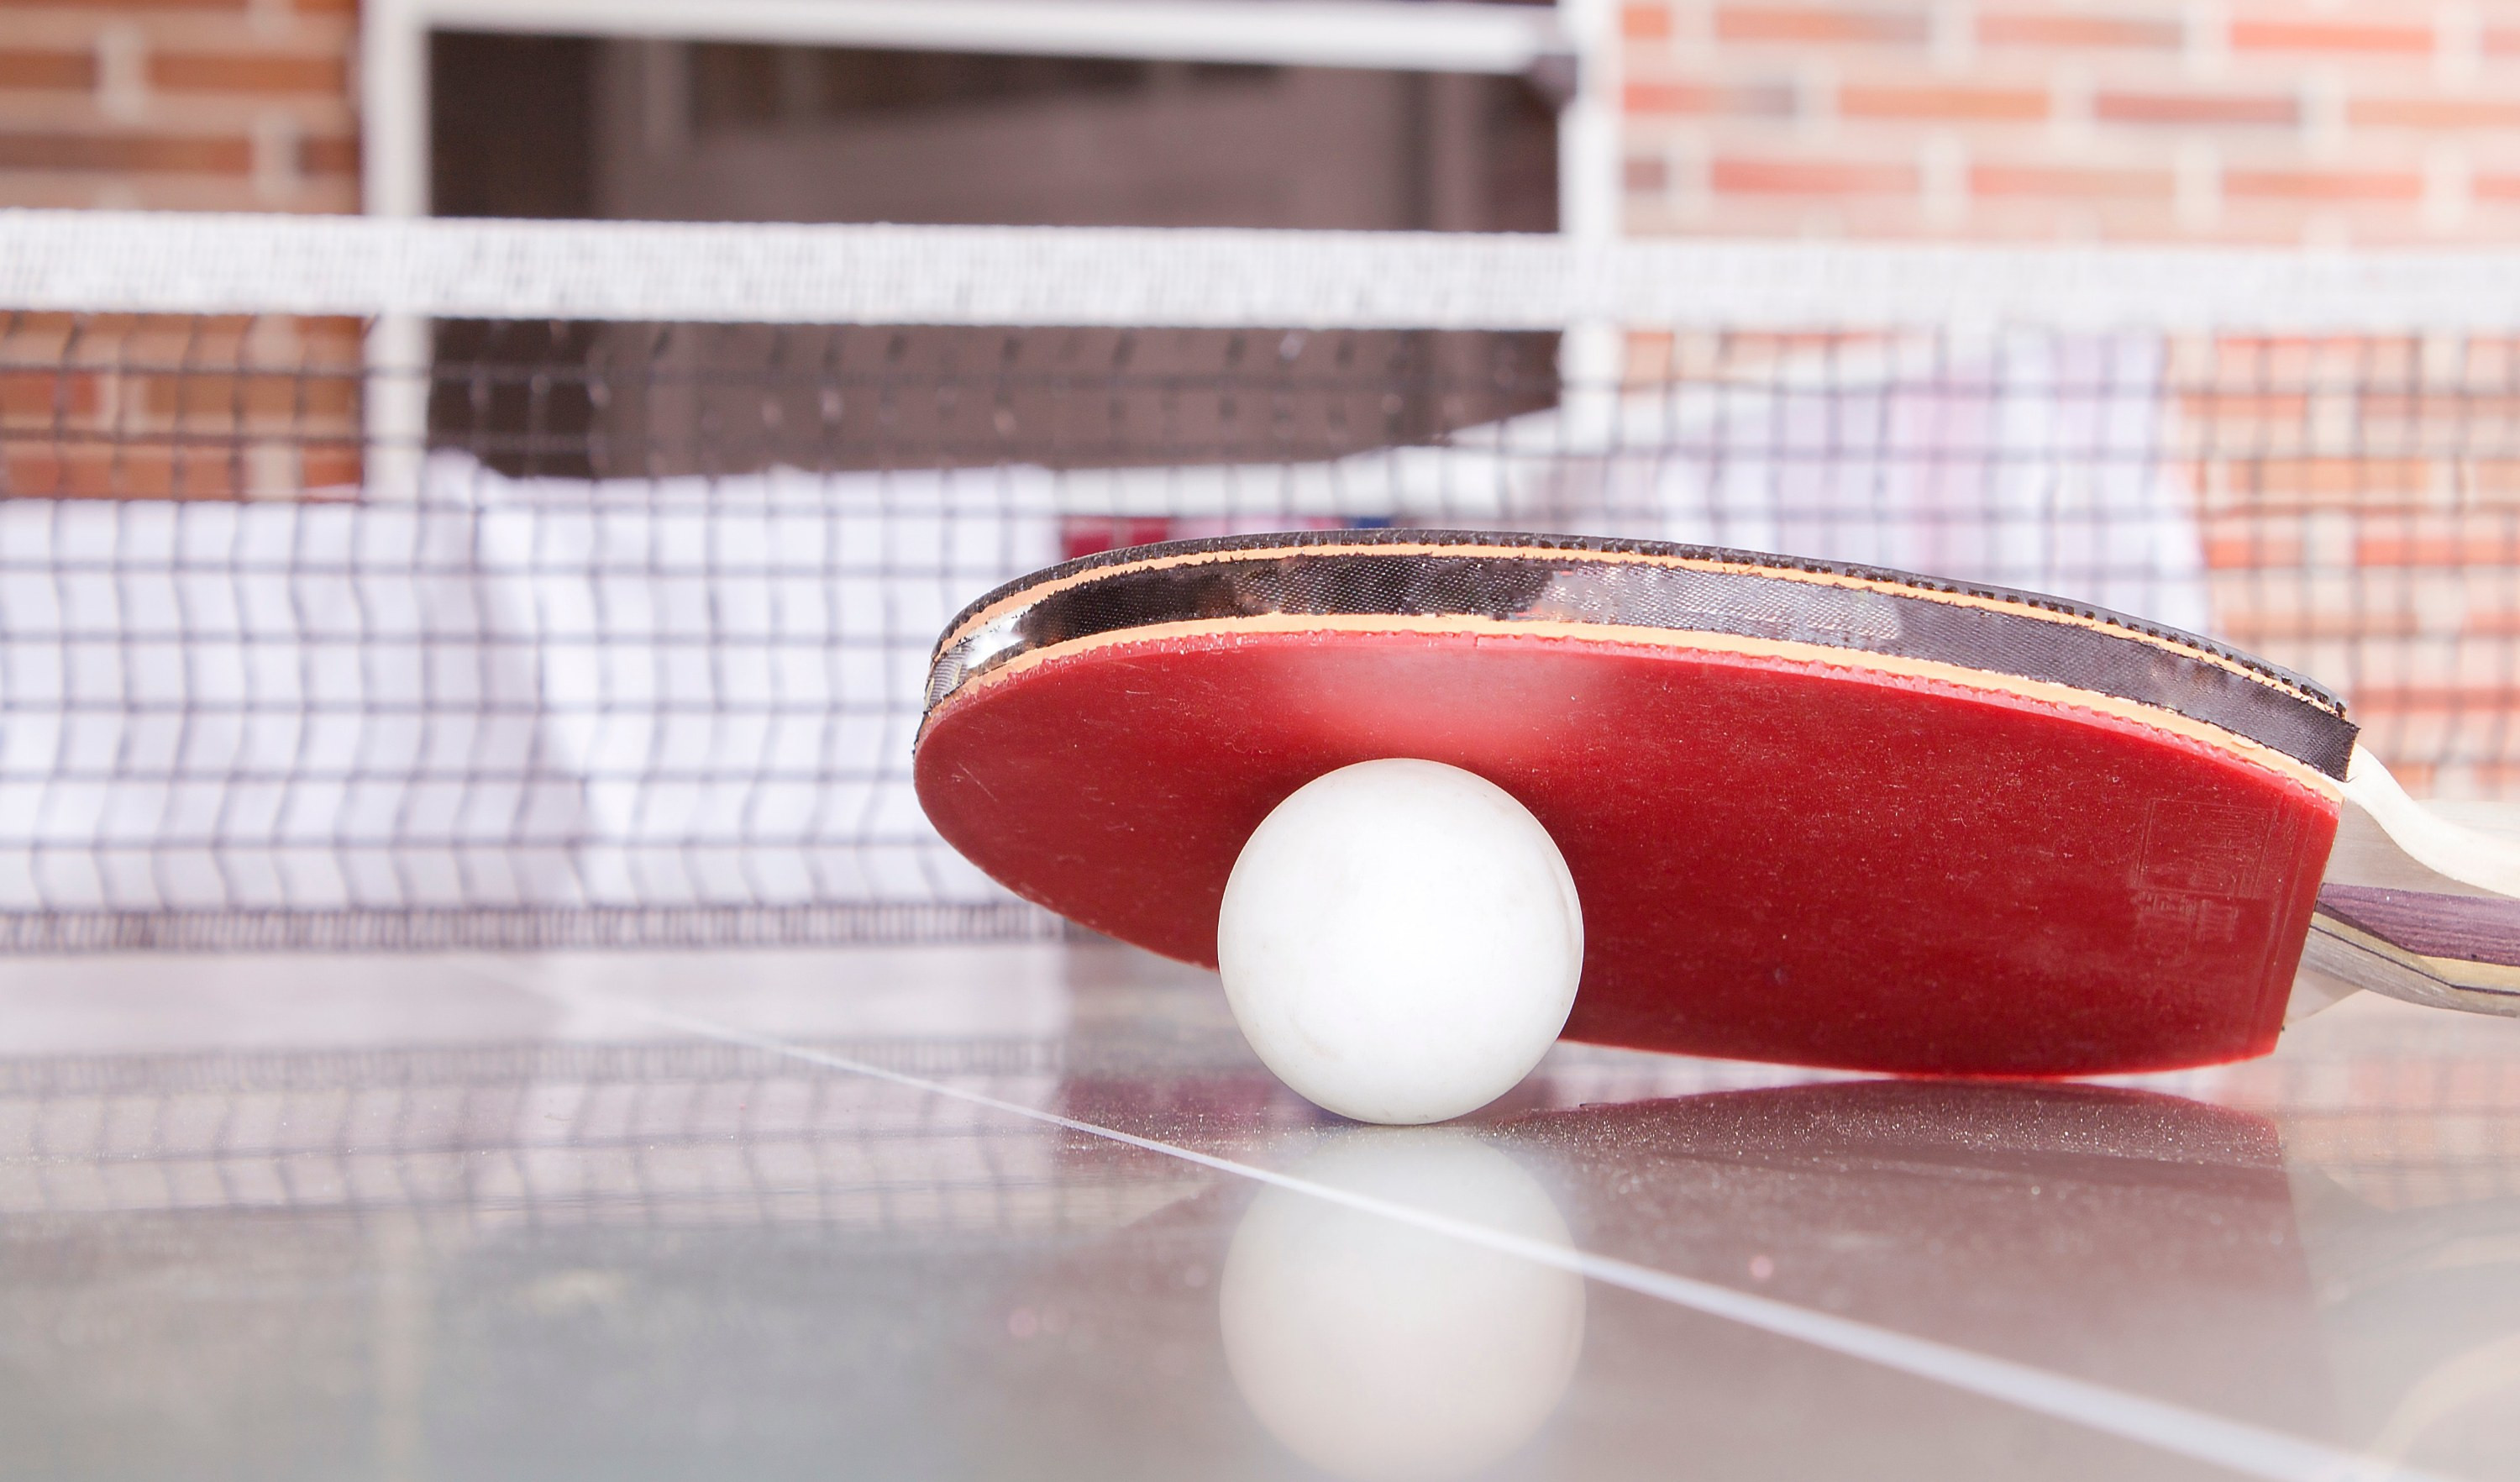 Ping pong che passione: viaggio nella palestra di Sampierdarena, fra campioncini e veterani